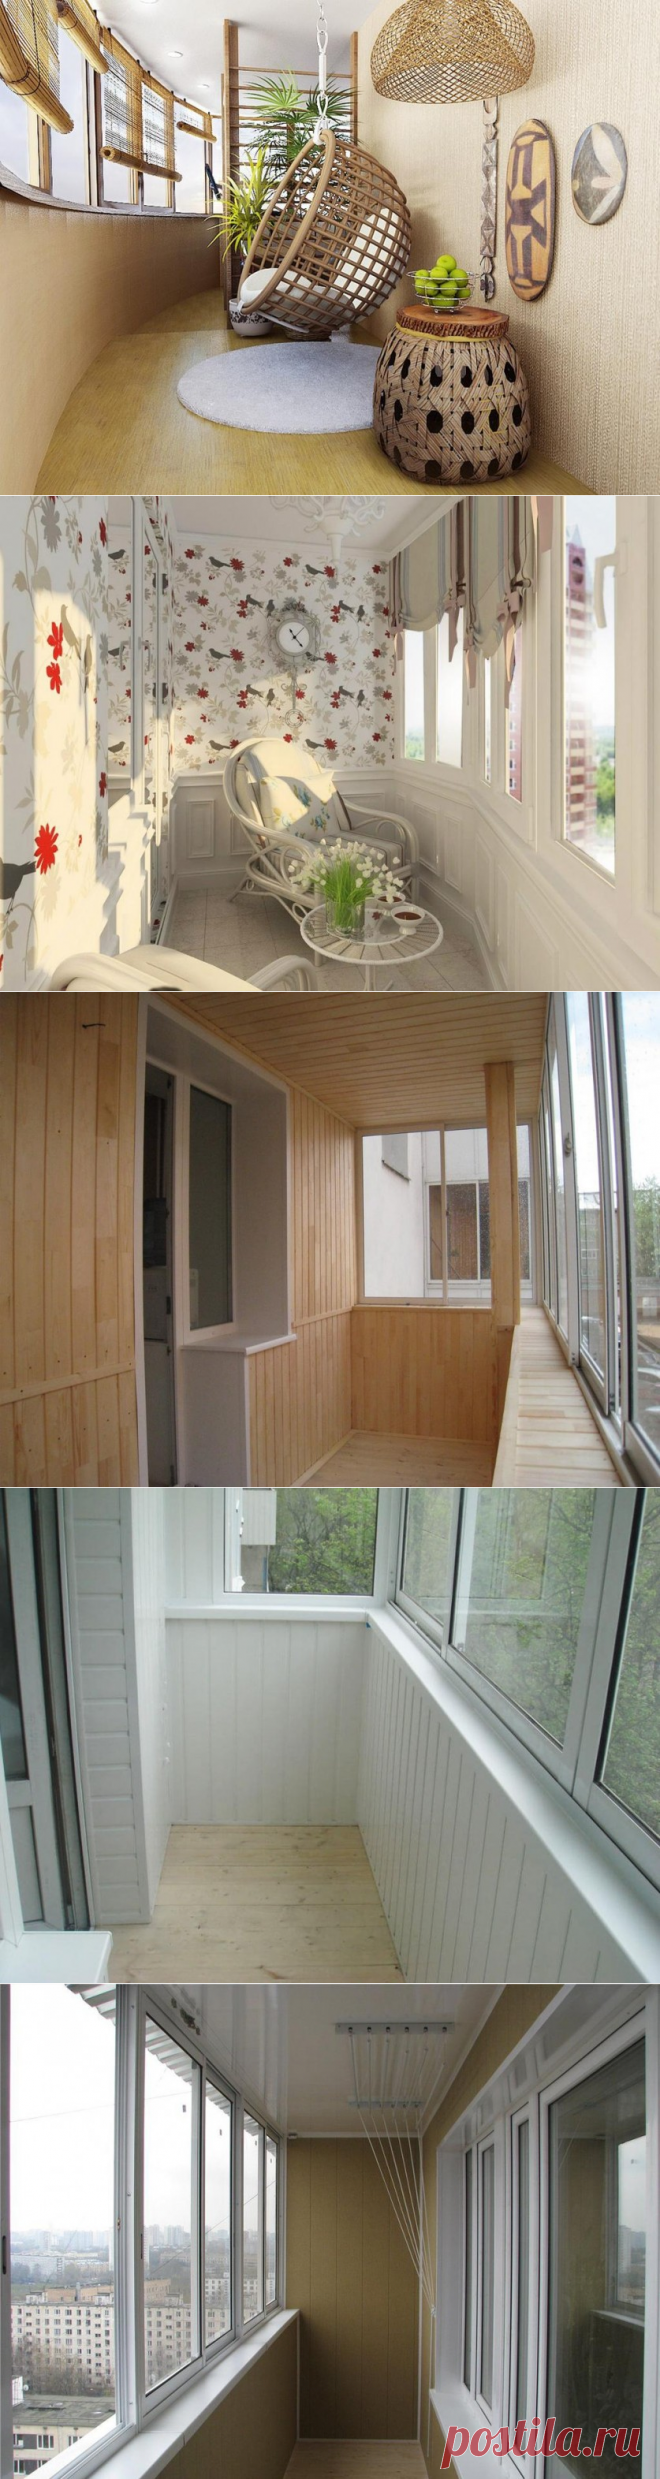 Внутренняя отделка балкона: материалы, идеи, рекомендации — Мой дом